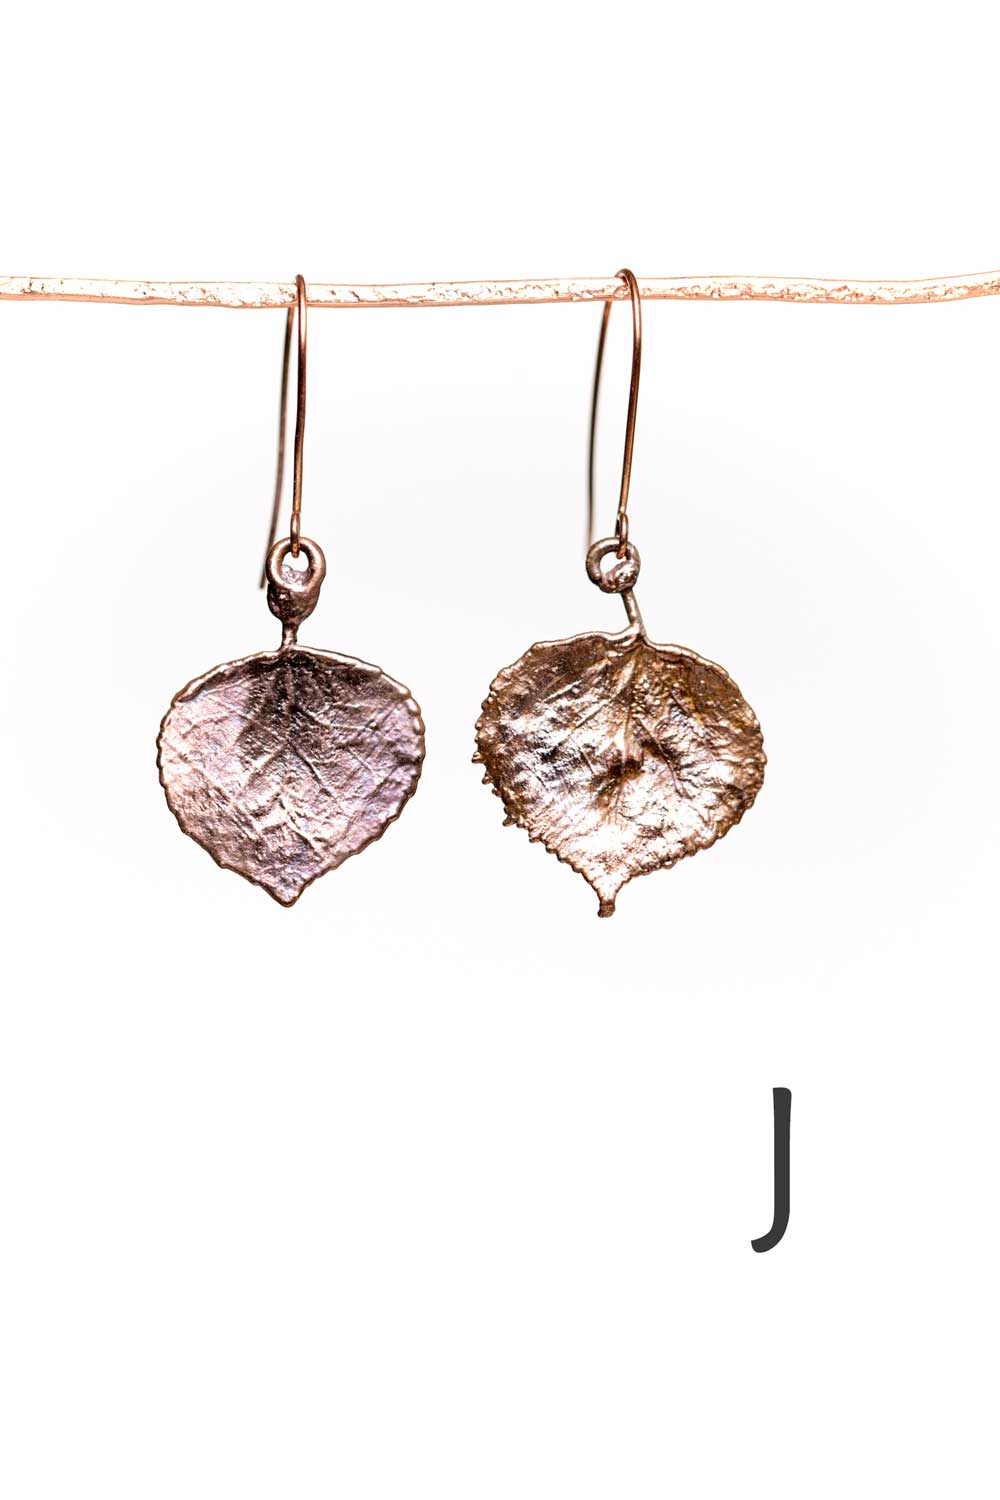 Genuine Aspen Leaf Earrings - copper or silver